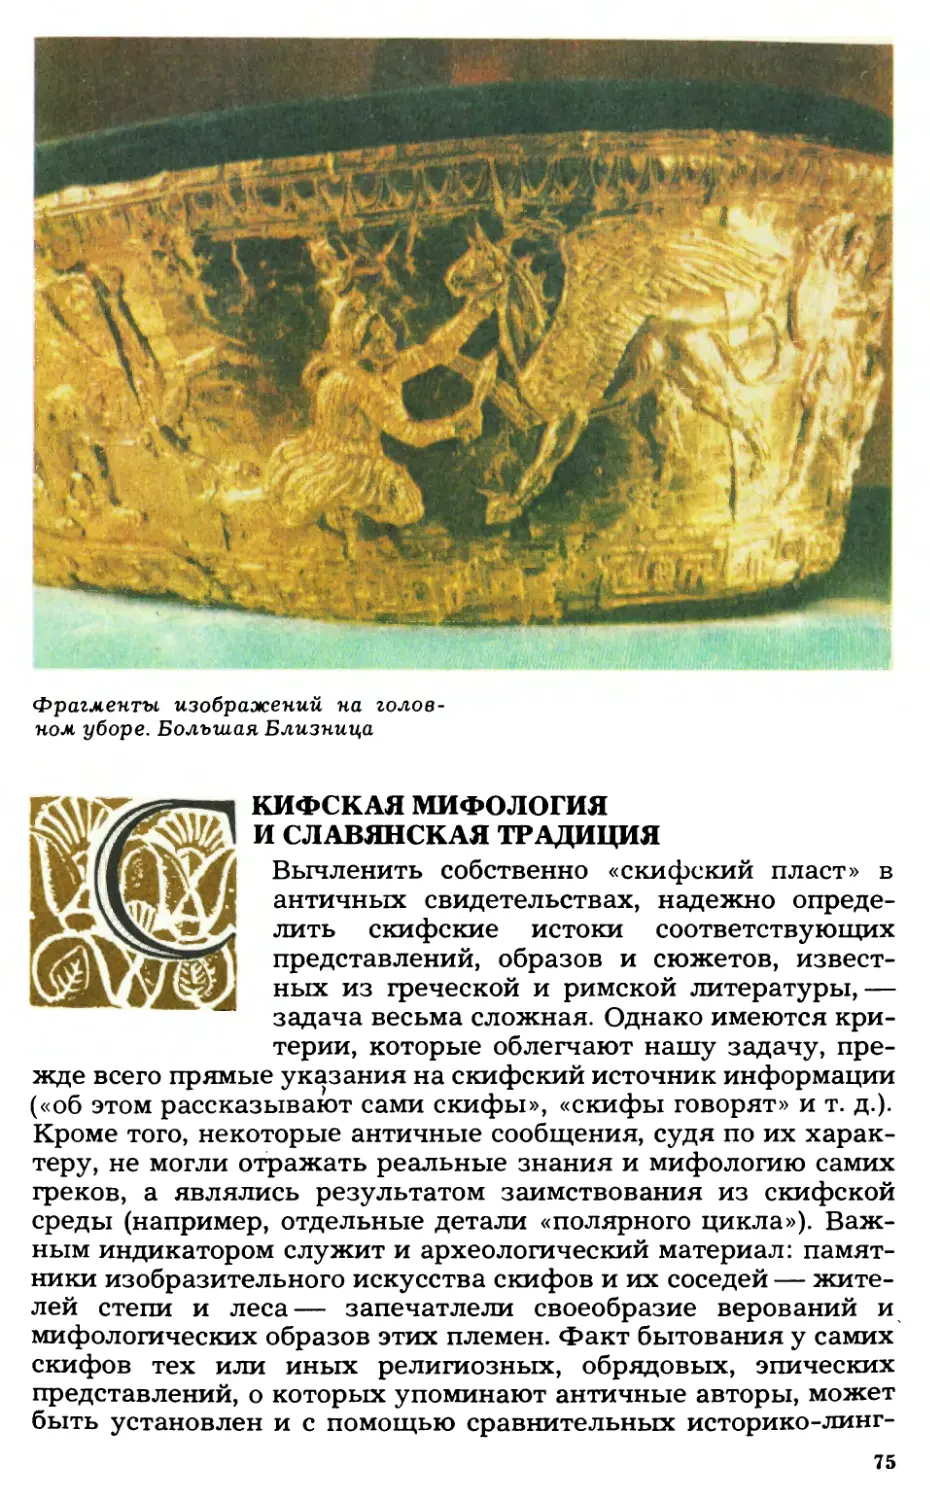 Скифская мифология и славянская традиция